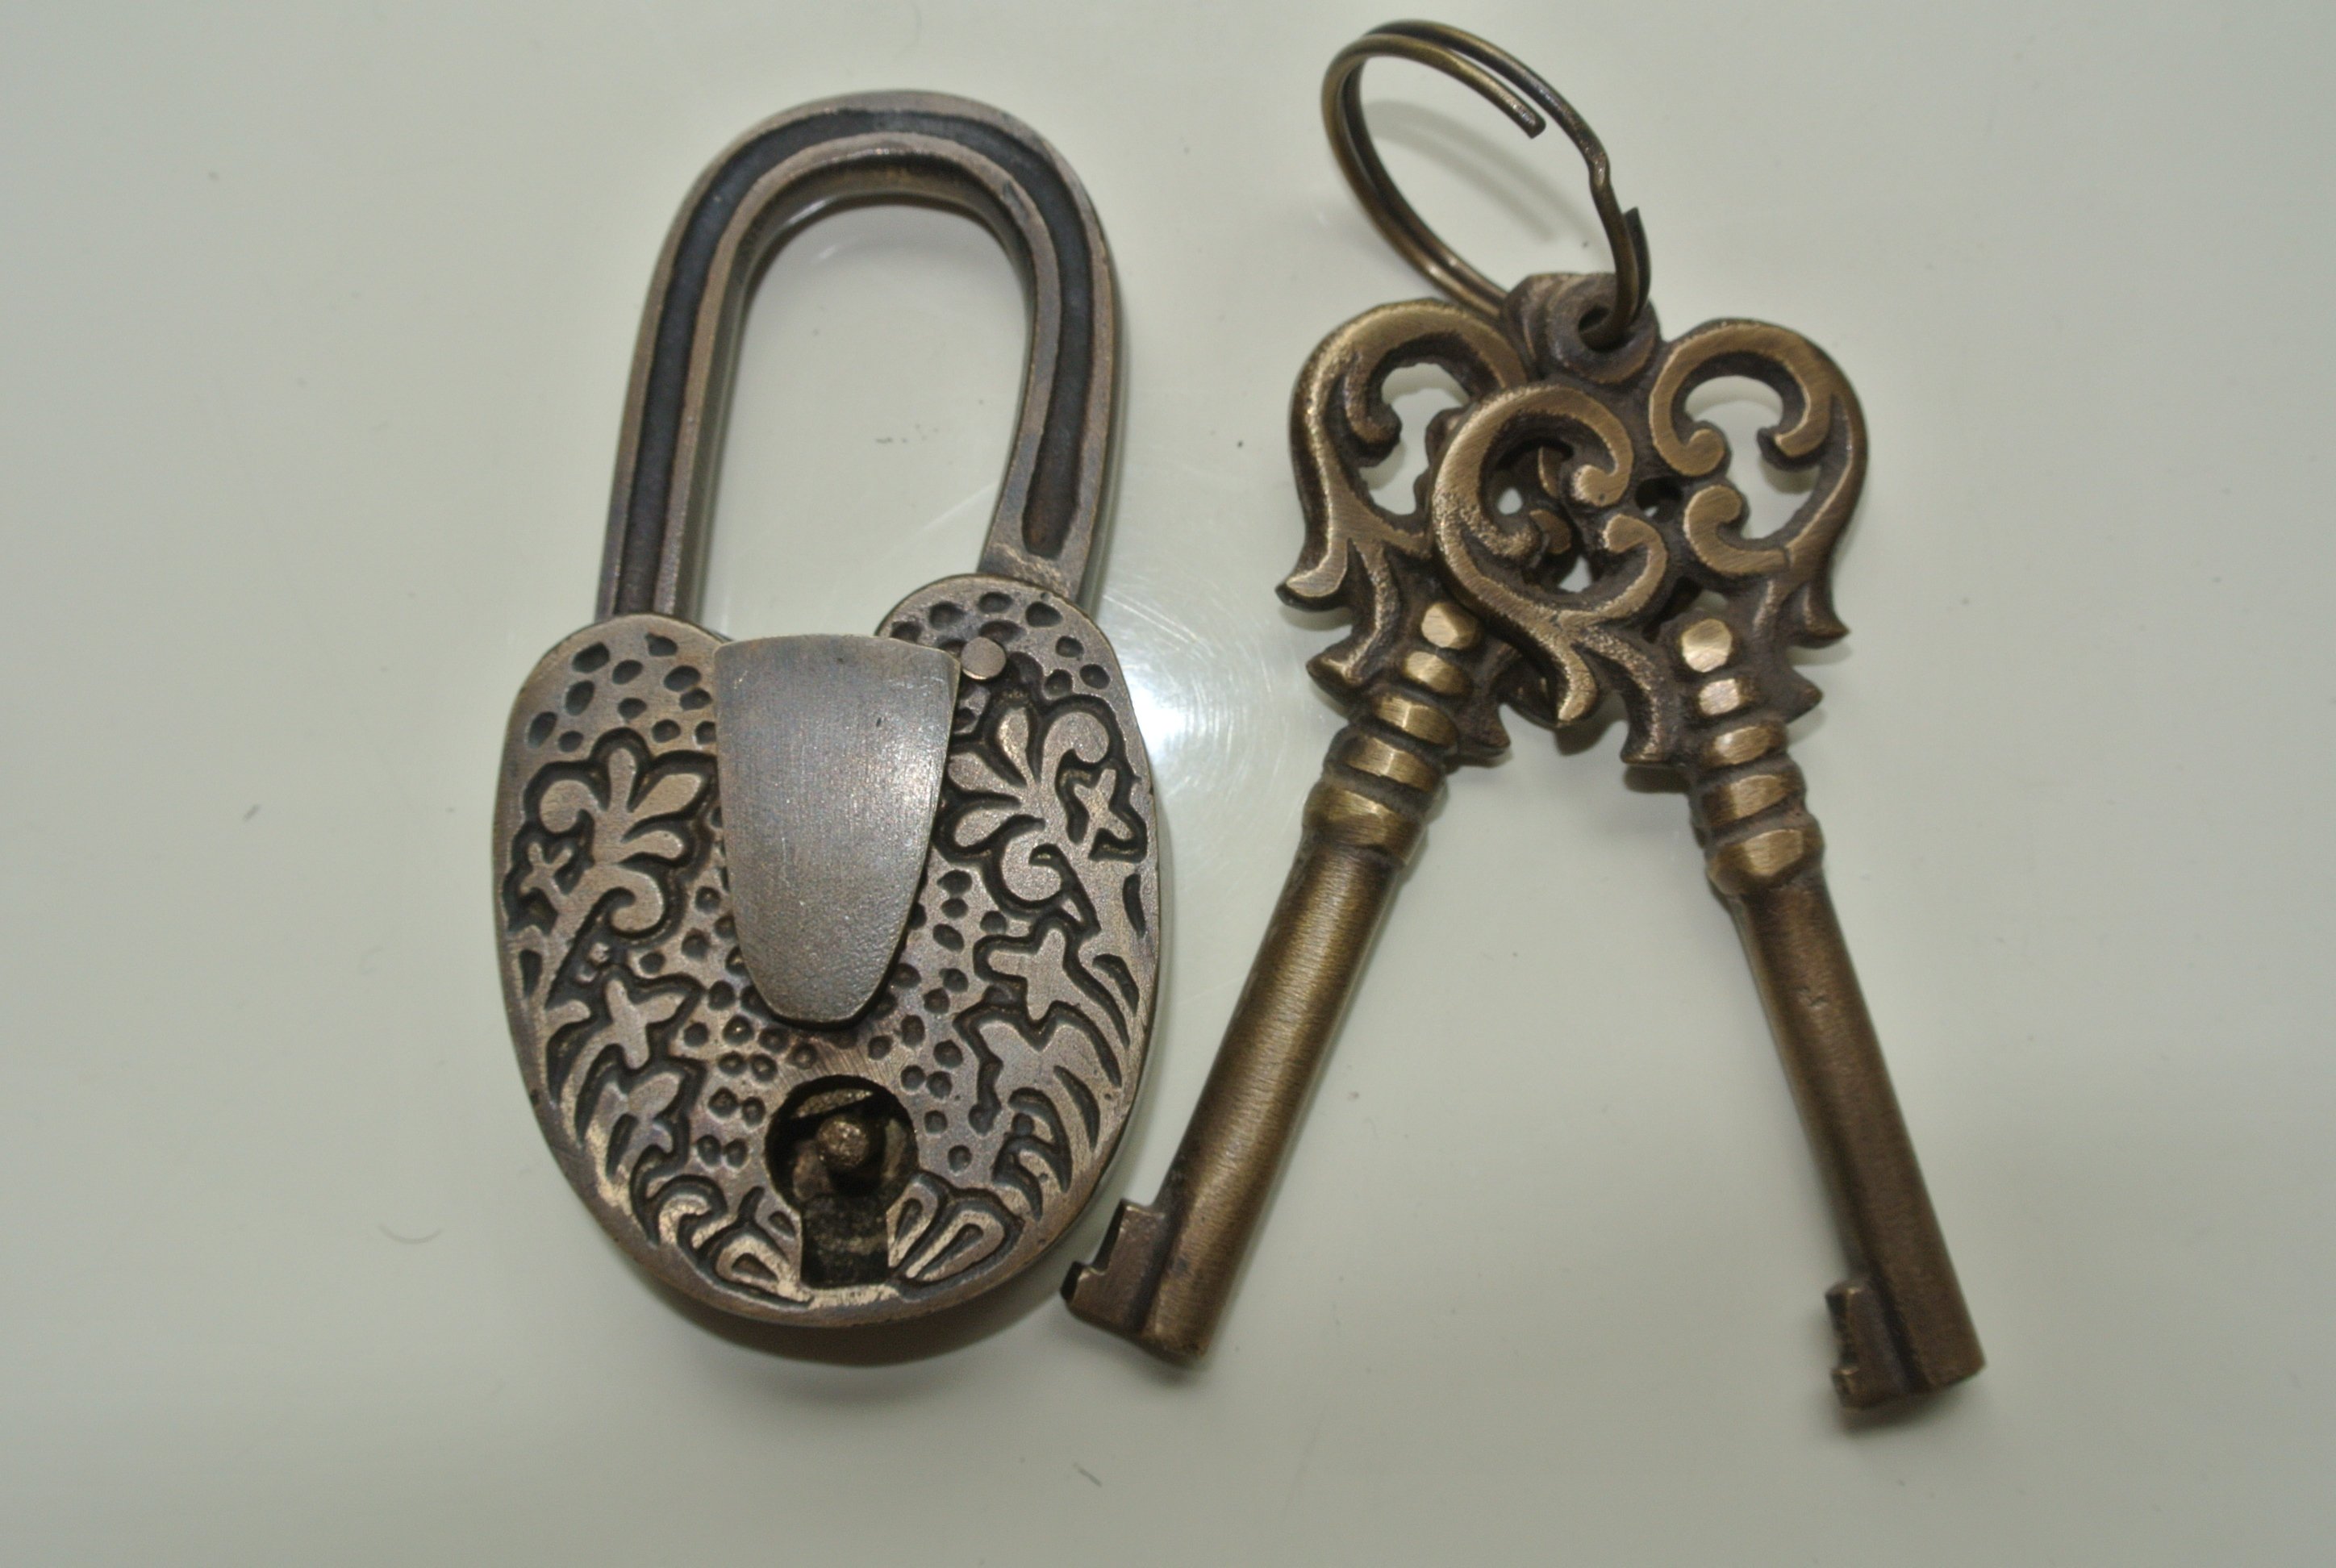 Aged old  stye antique look Padlock solid brass keys heavy lock works 7.5 cm B 